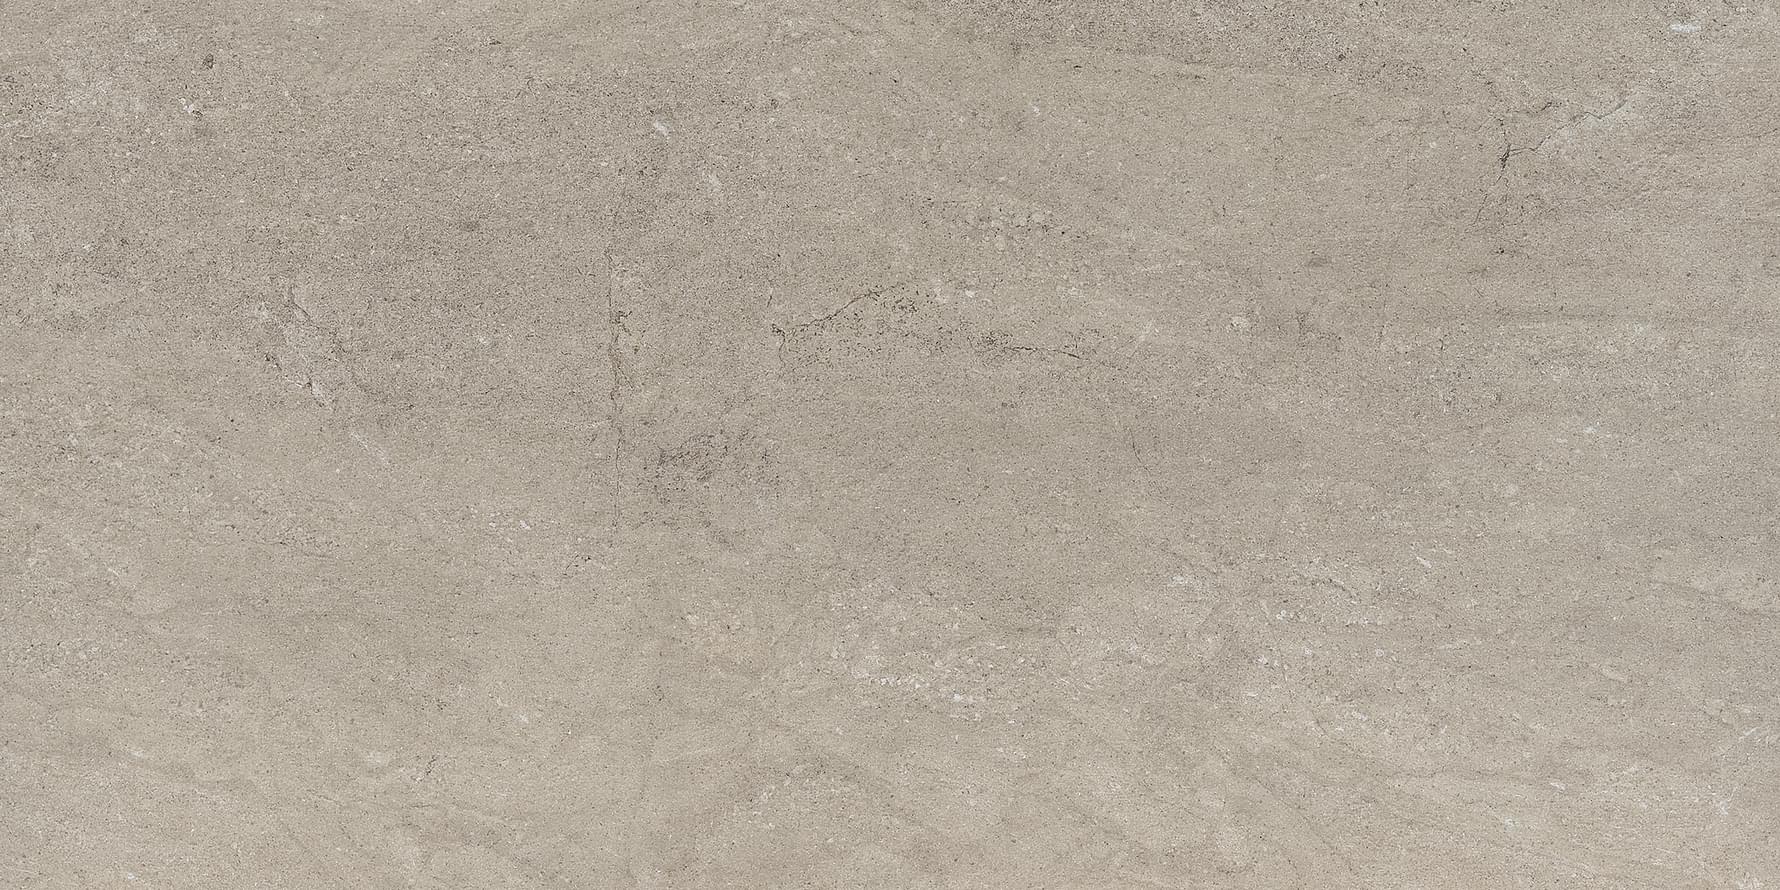 Gigacer Quarry Gravel Stone Mat 6 Mm 60x120